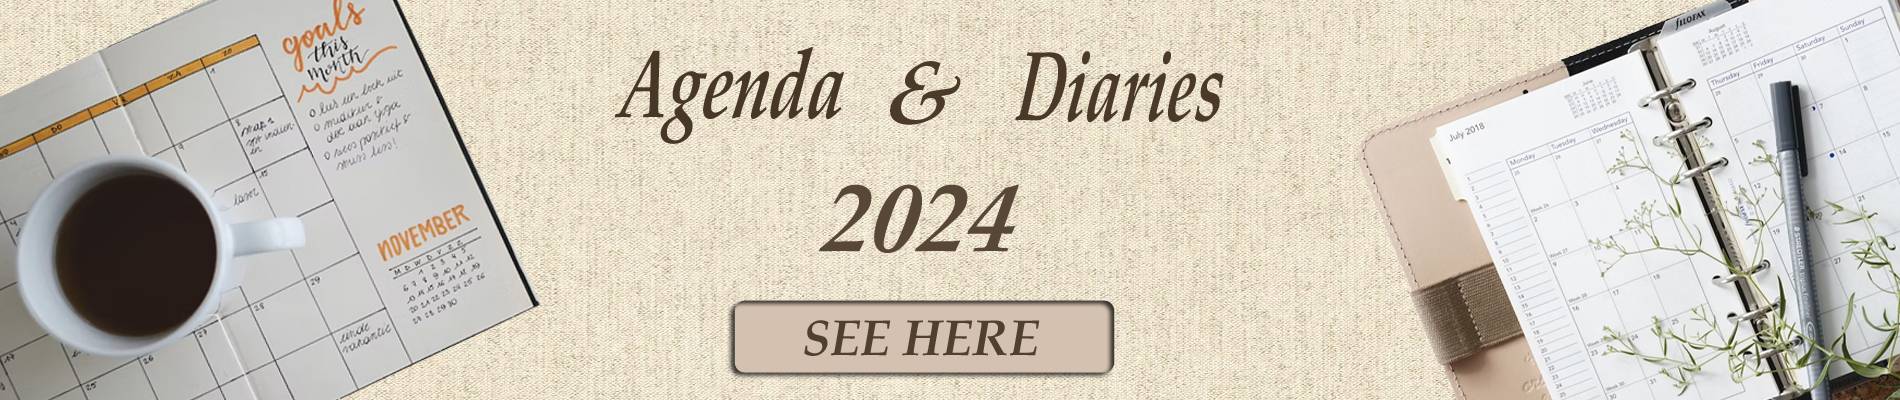 Agenda & Diaries Mark Center